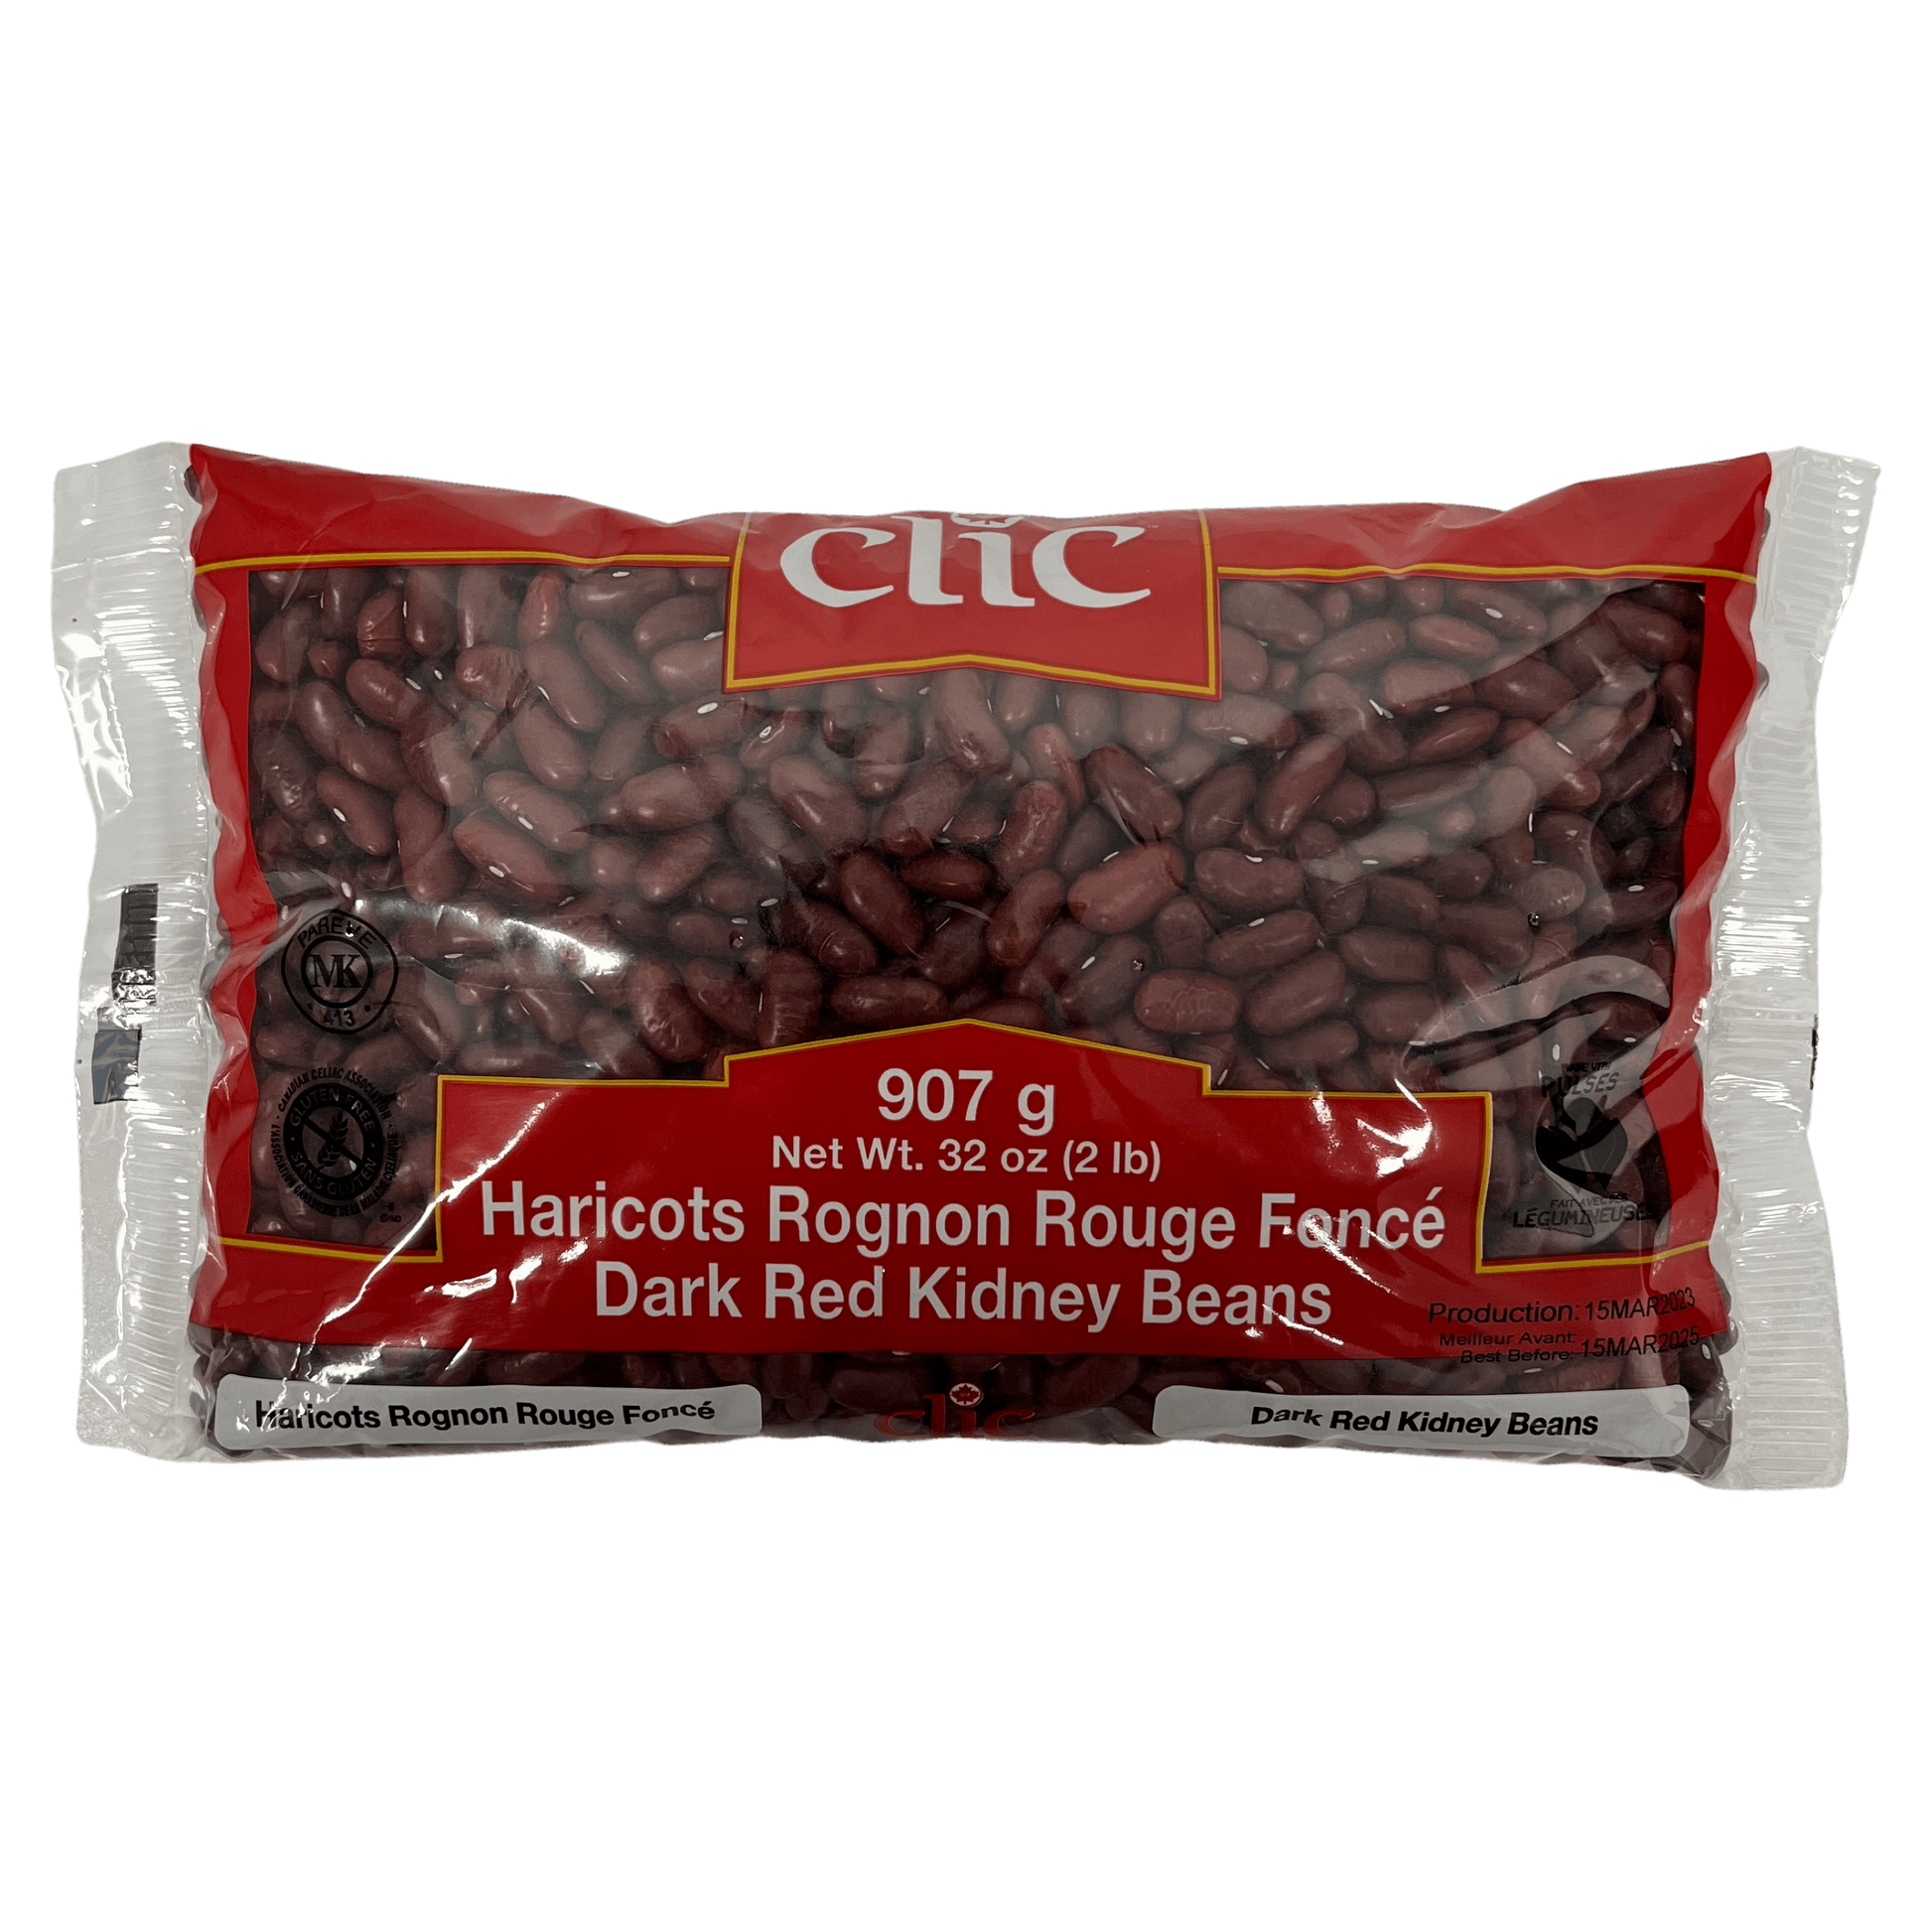 Clic Dark Red Kidney Beans 907g Damaski